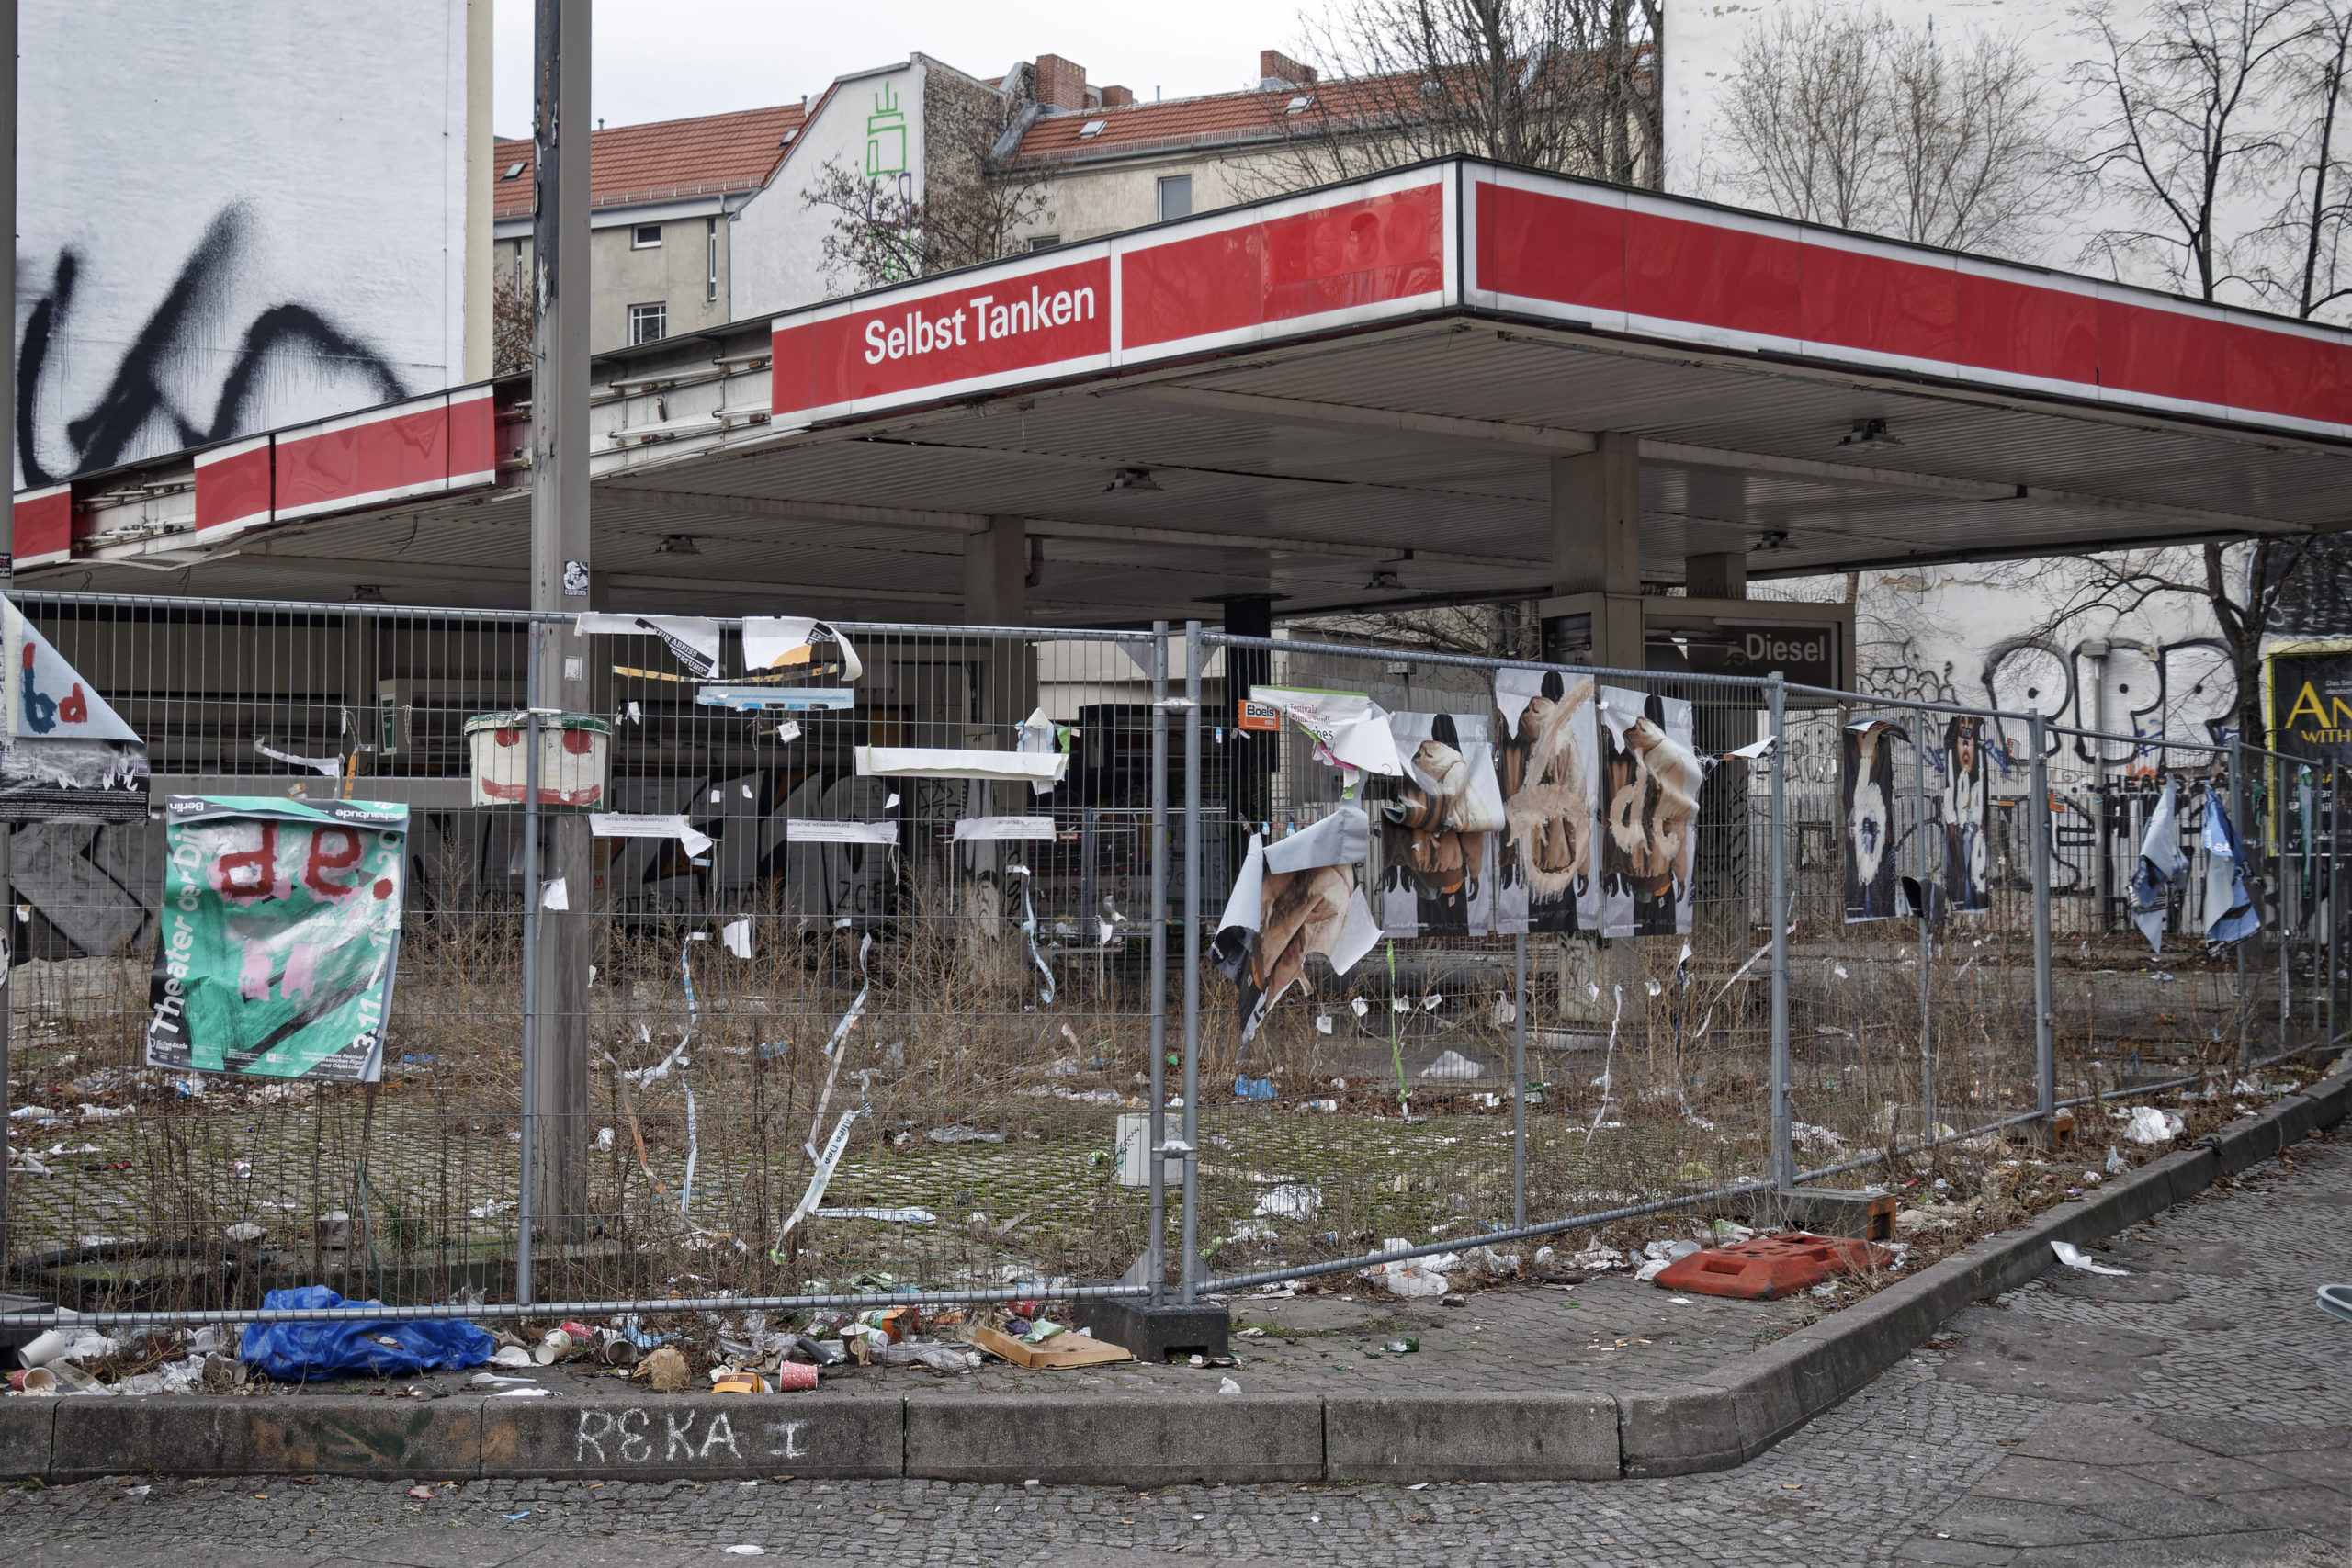 Mai in Berlin Lange war es ruhig um die Esso-Tankstelle an der Neuköllner Sonnenallee. Nun soll sie für ein eintägiges, alternatives Festival Ende Mai zum Leben erwachen.